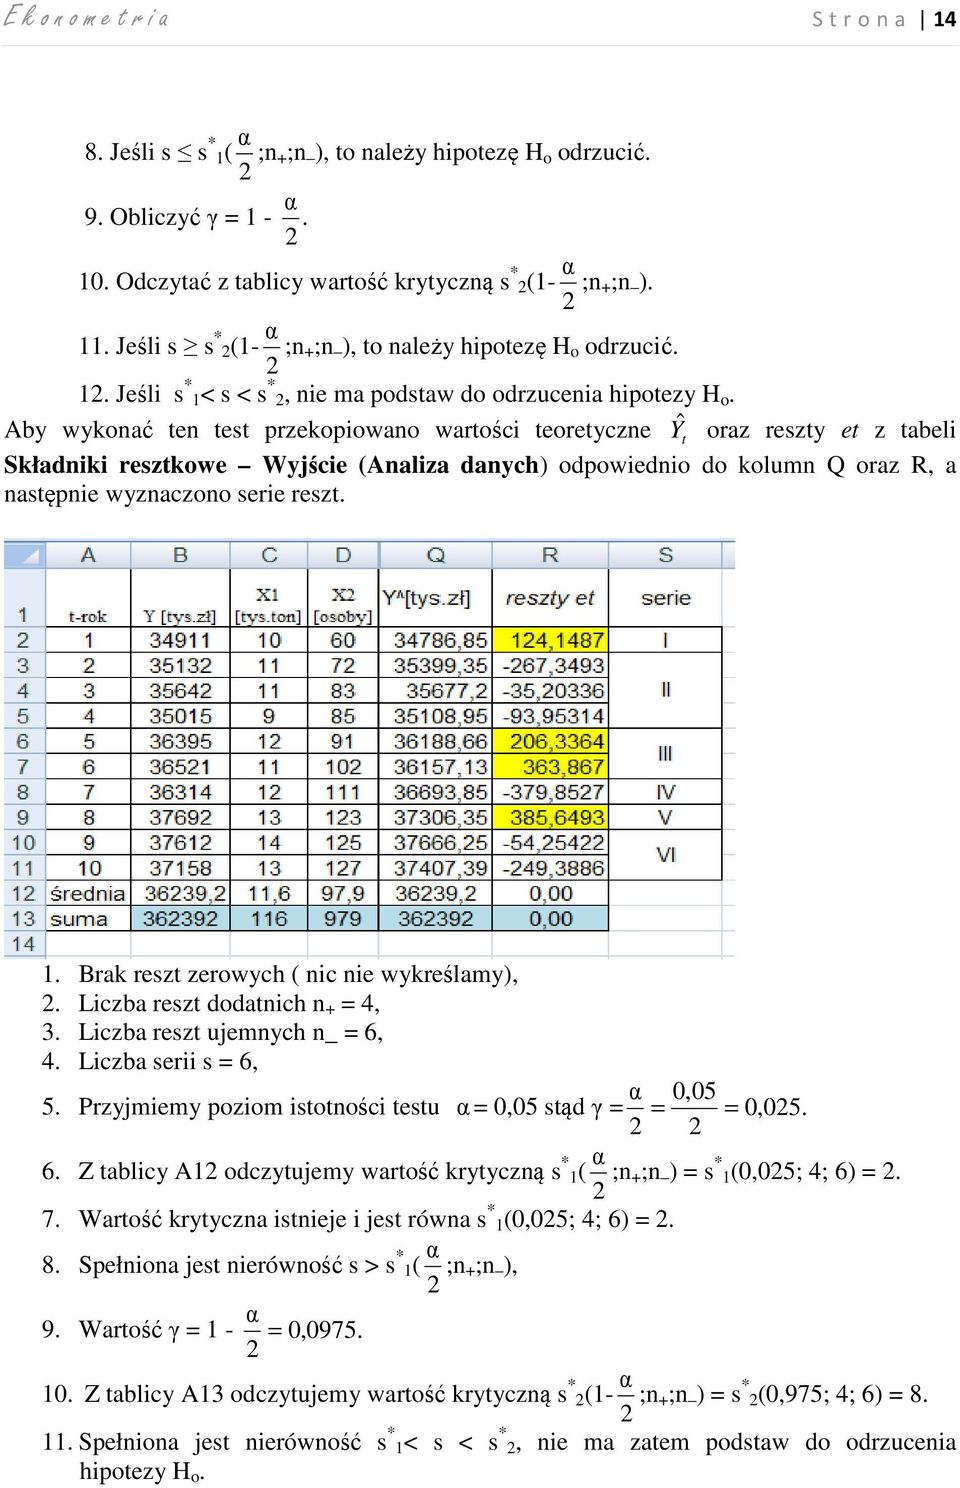 Aby wykonać ten test przekopiowano wartości teoretyczne Yˆ t oraz reszty et z tabeli Składniki resztkowe Wyjście (Analiza danych) odpowiednio do kolumn Q oraz R, a następnie wyznaczono serie reszt.